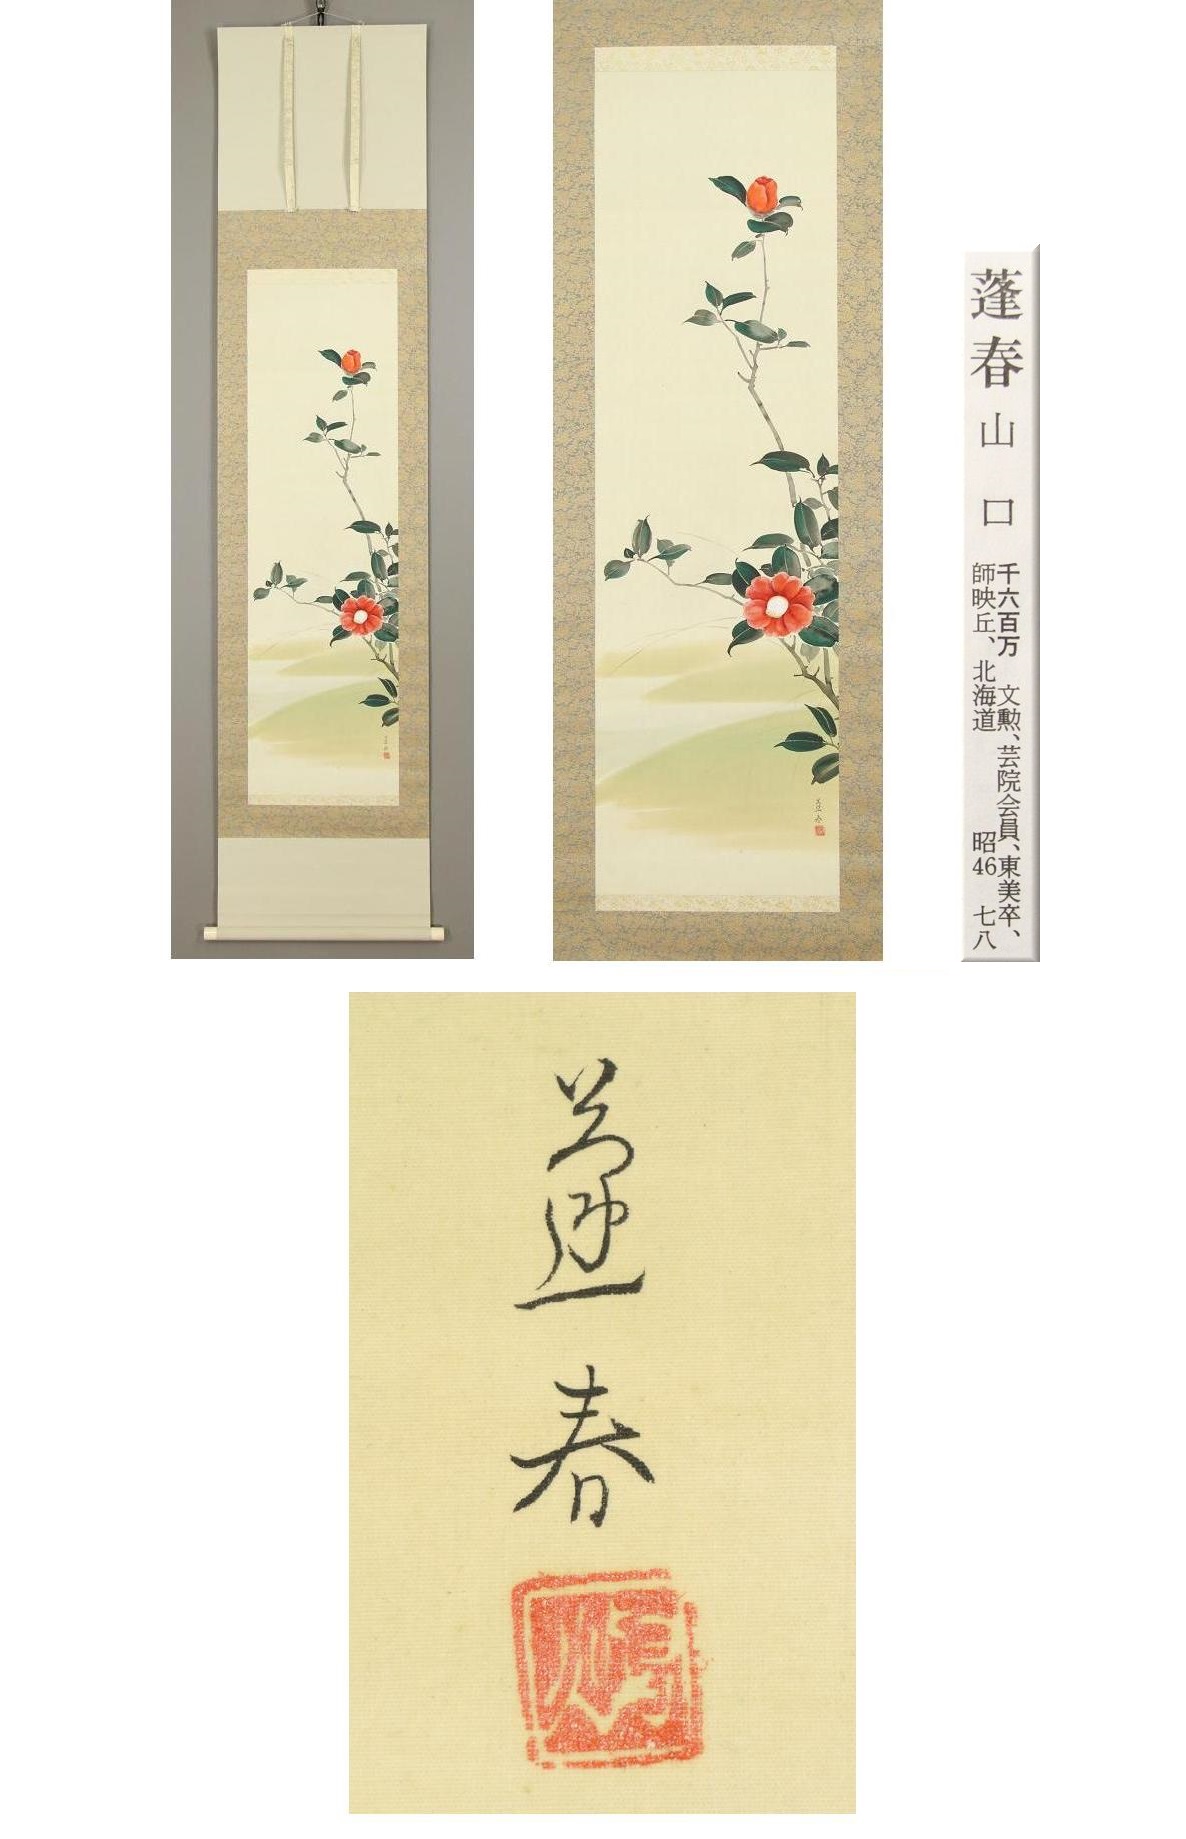 【格安在庫】◆山口蓬春◆椿◆日本画◆北海道◆絹本◆掛軸◆k809 花鳥、鳥獣